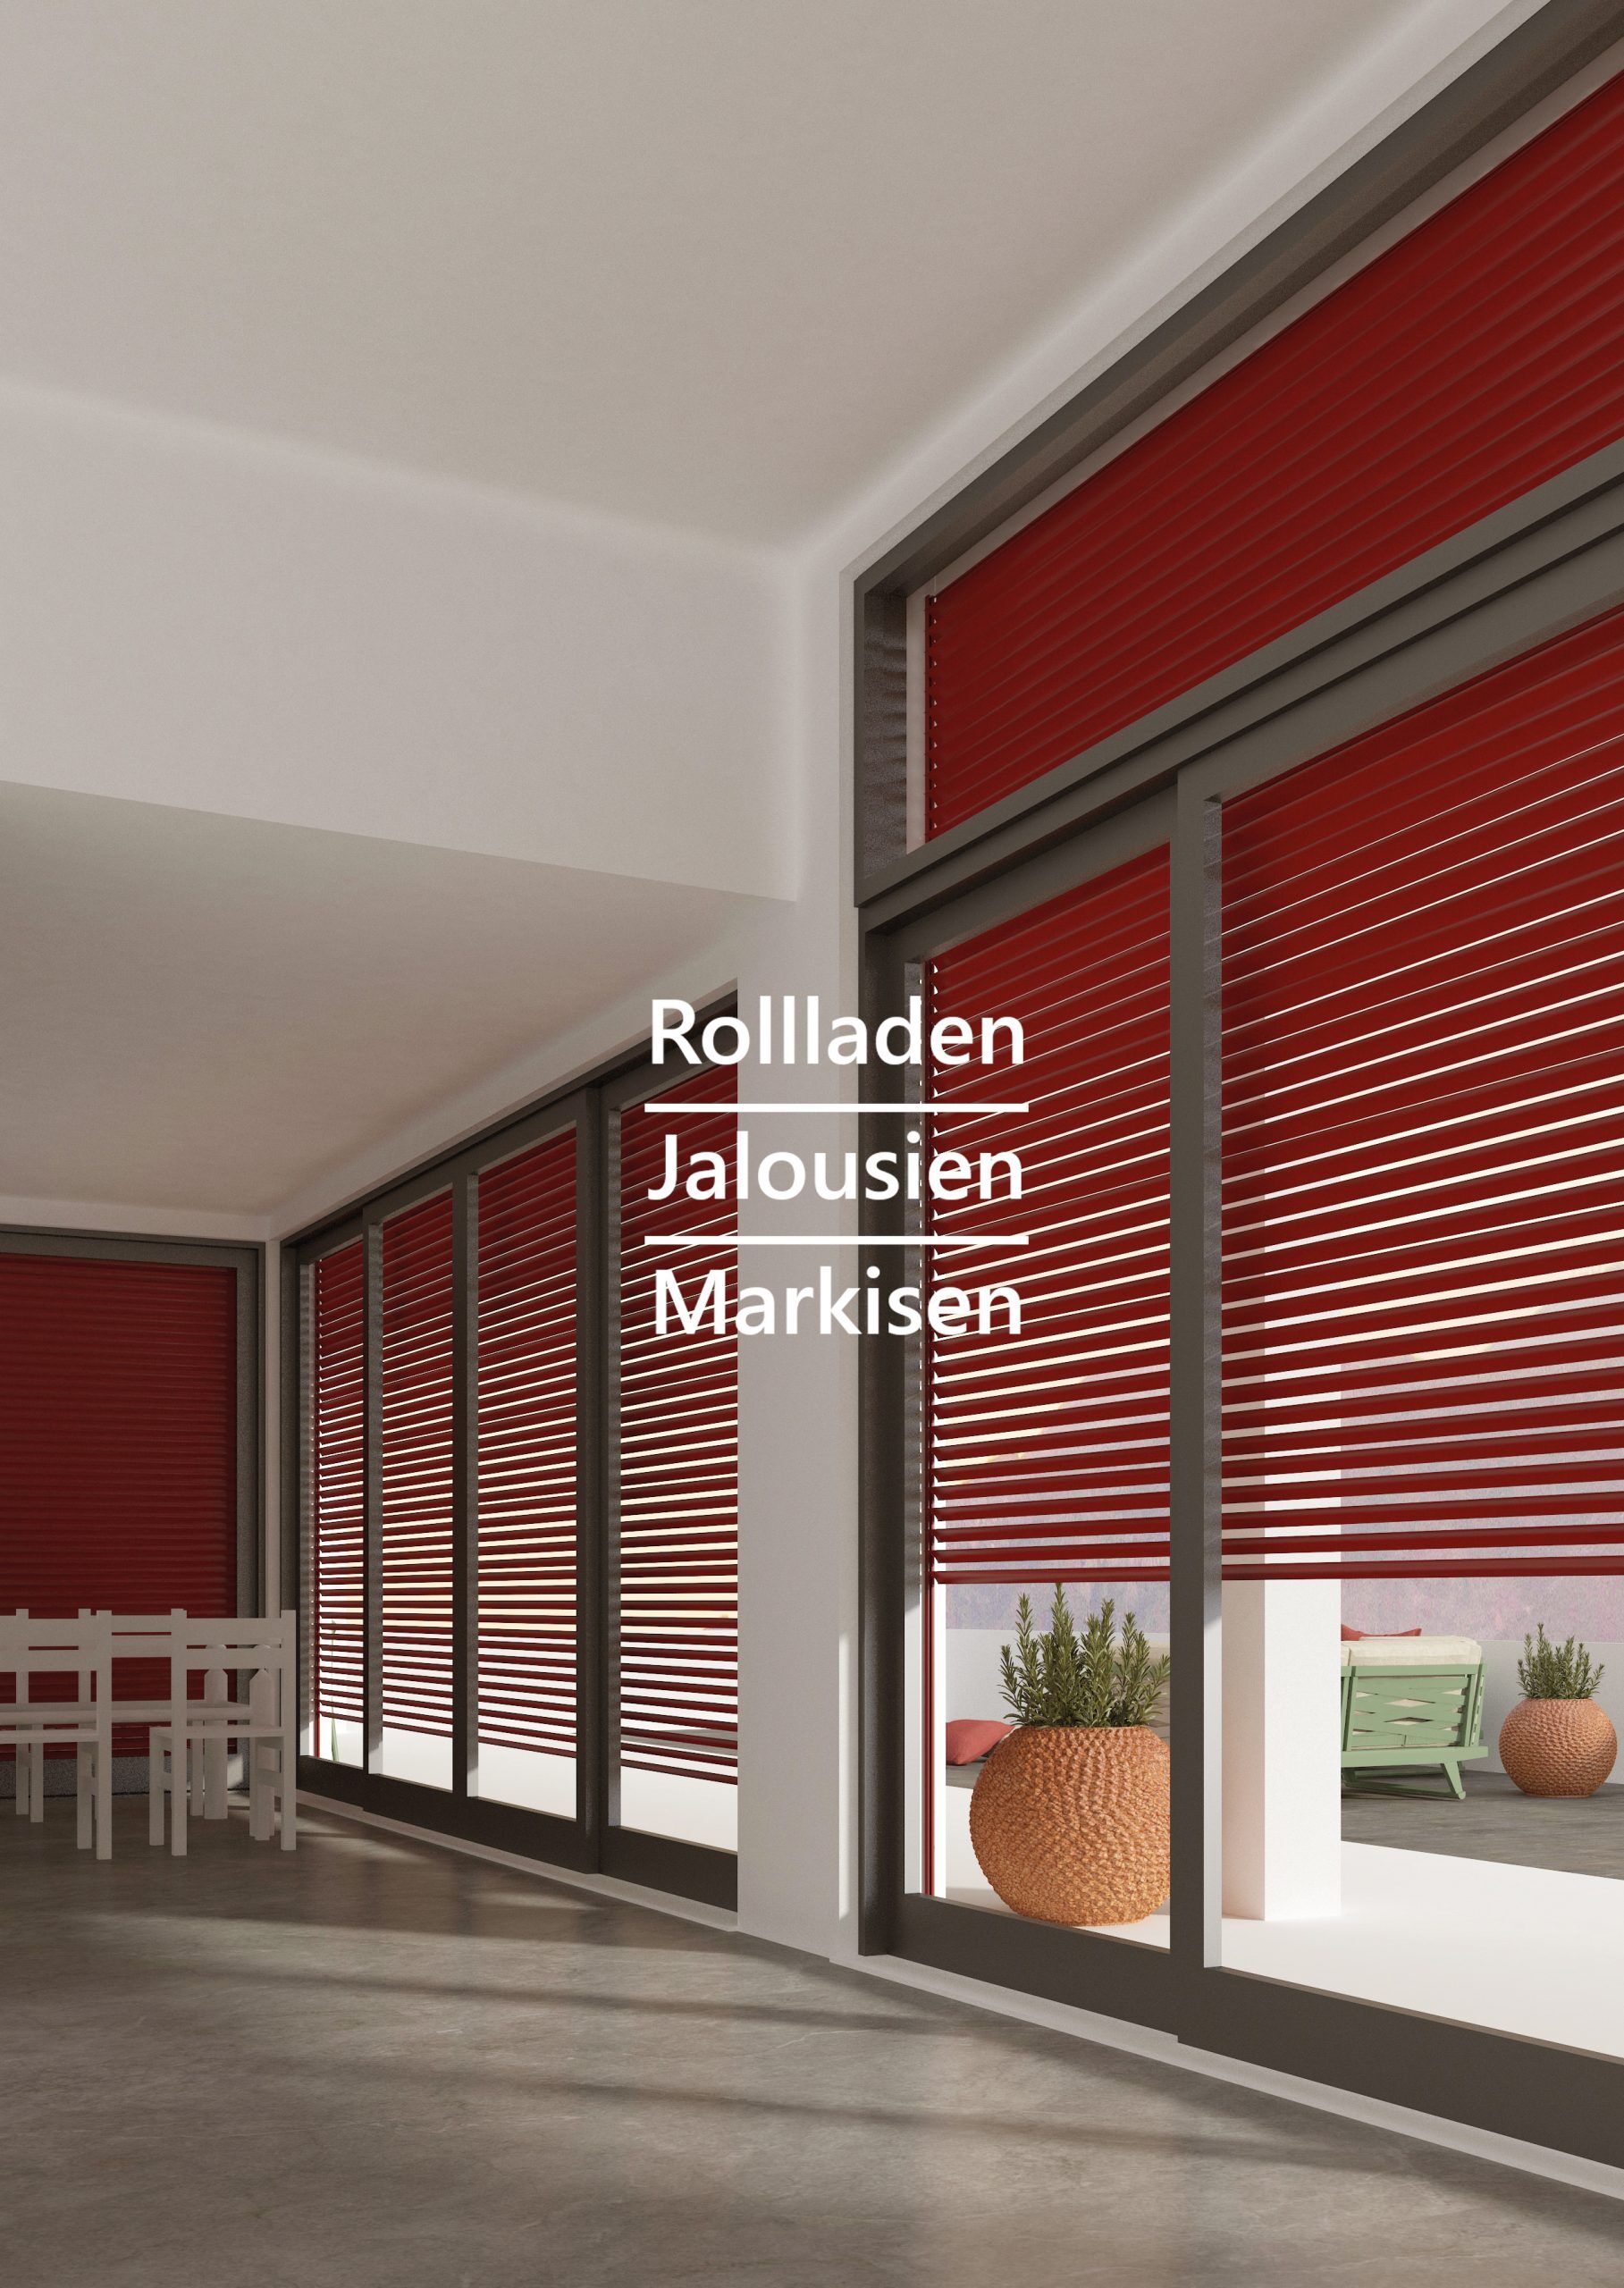 Rollladen-Dichtung - Rollladen - Markisen - Jalousien - Service in Fellbach  und Leonberg bei Stuttgart